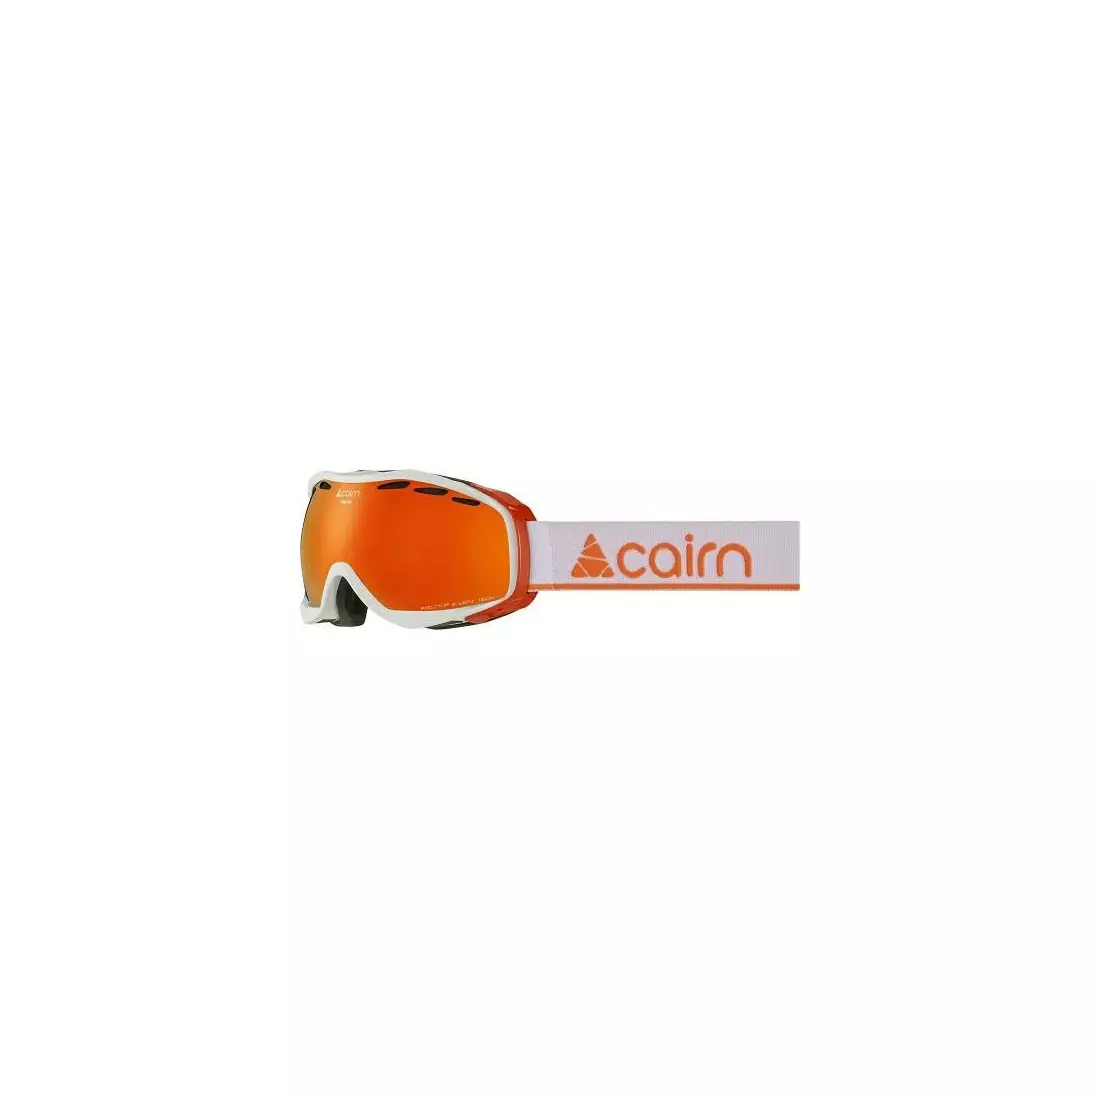 CAIRN ski/snowboard goggles ALPHA SPX3000 IUM Shiny White Orange